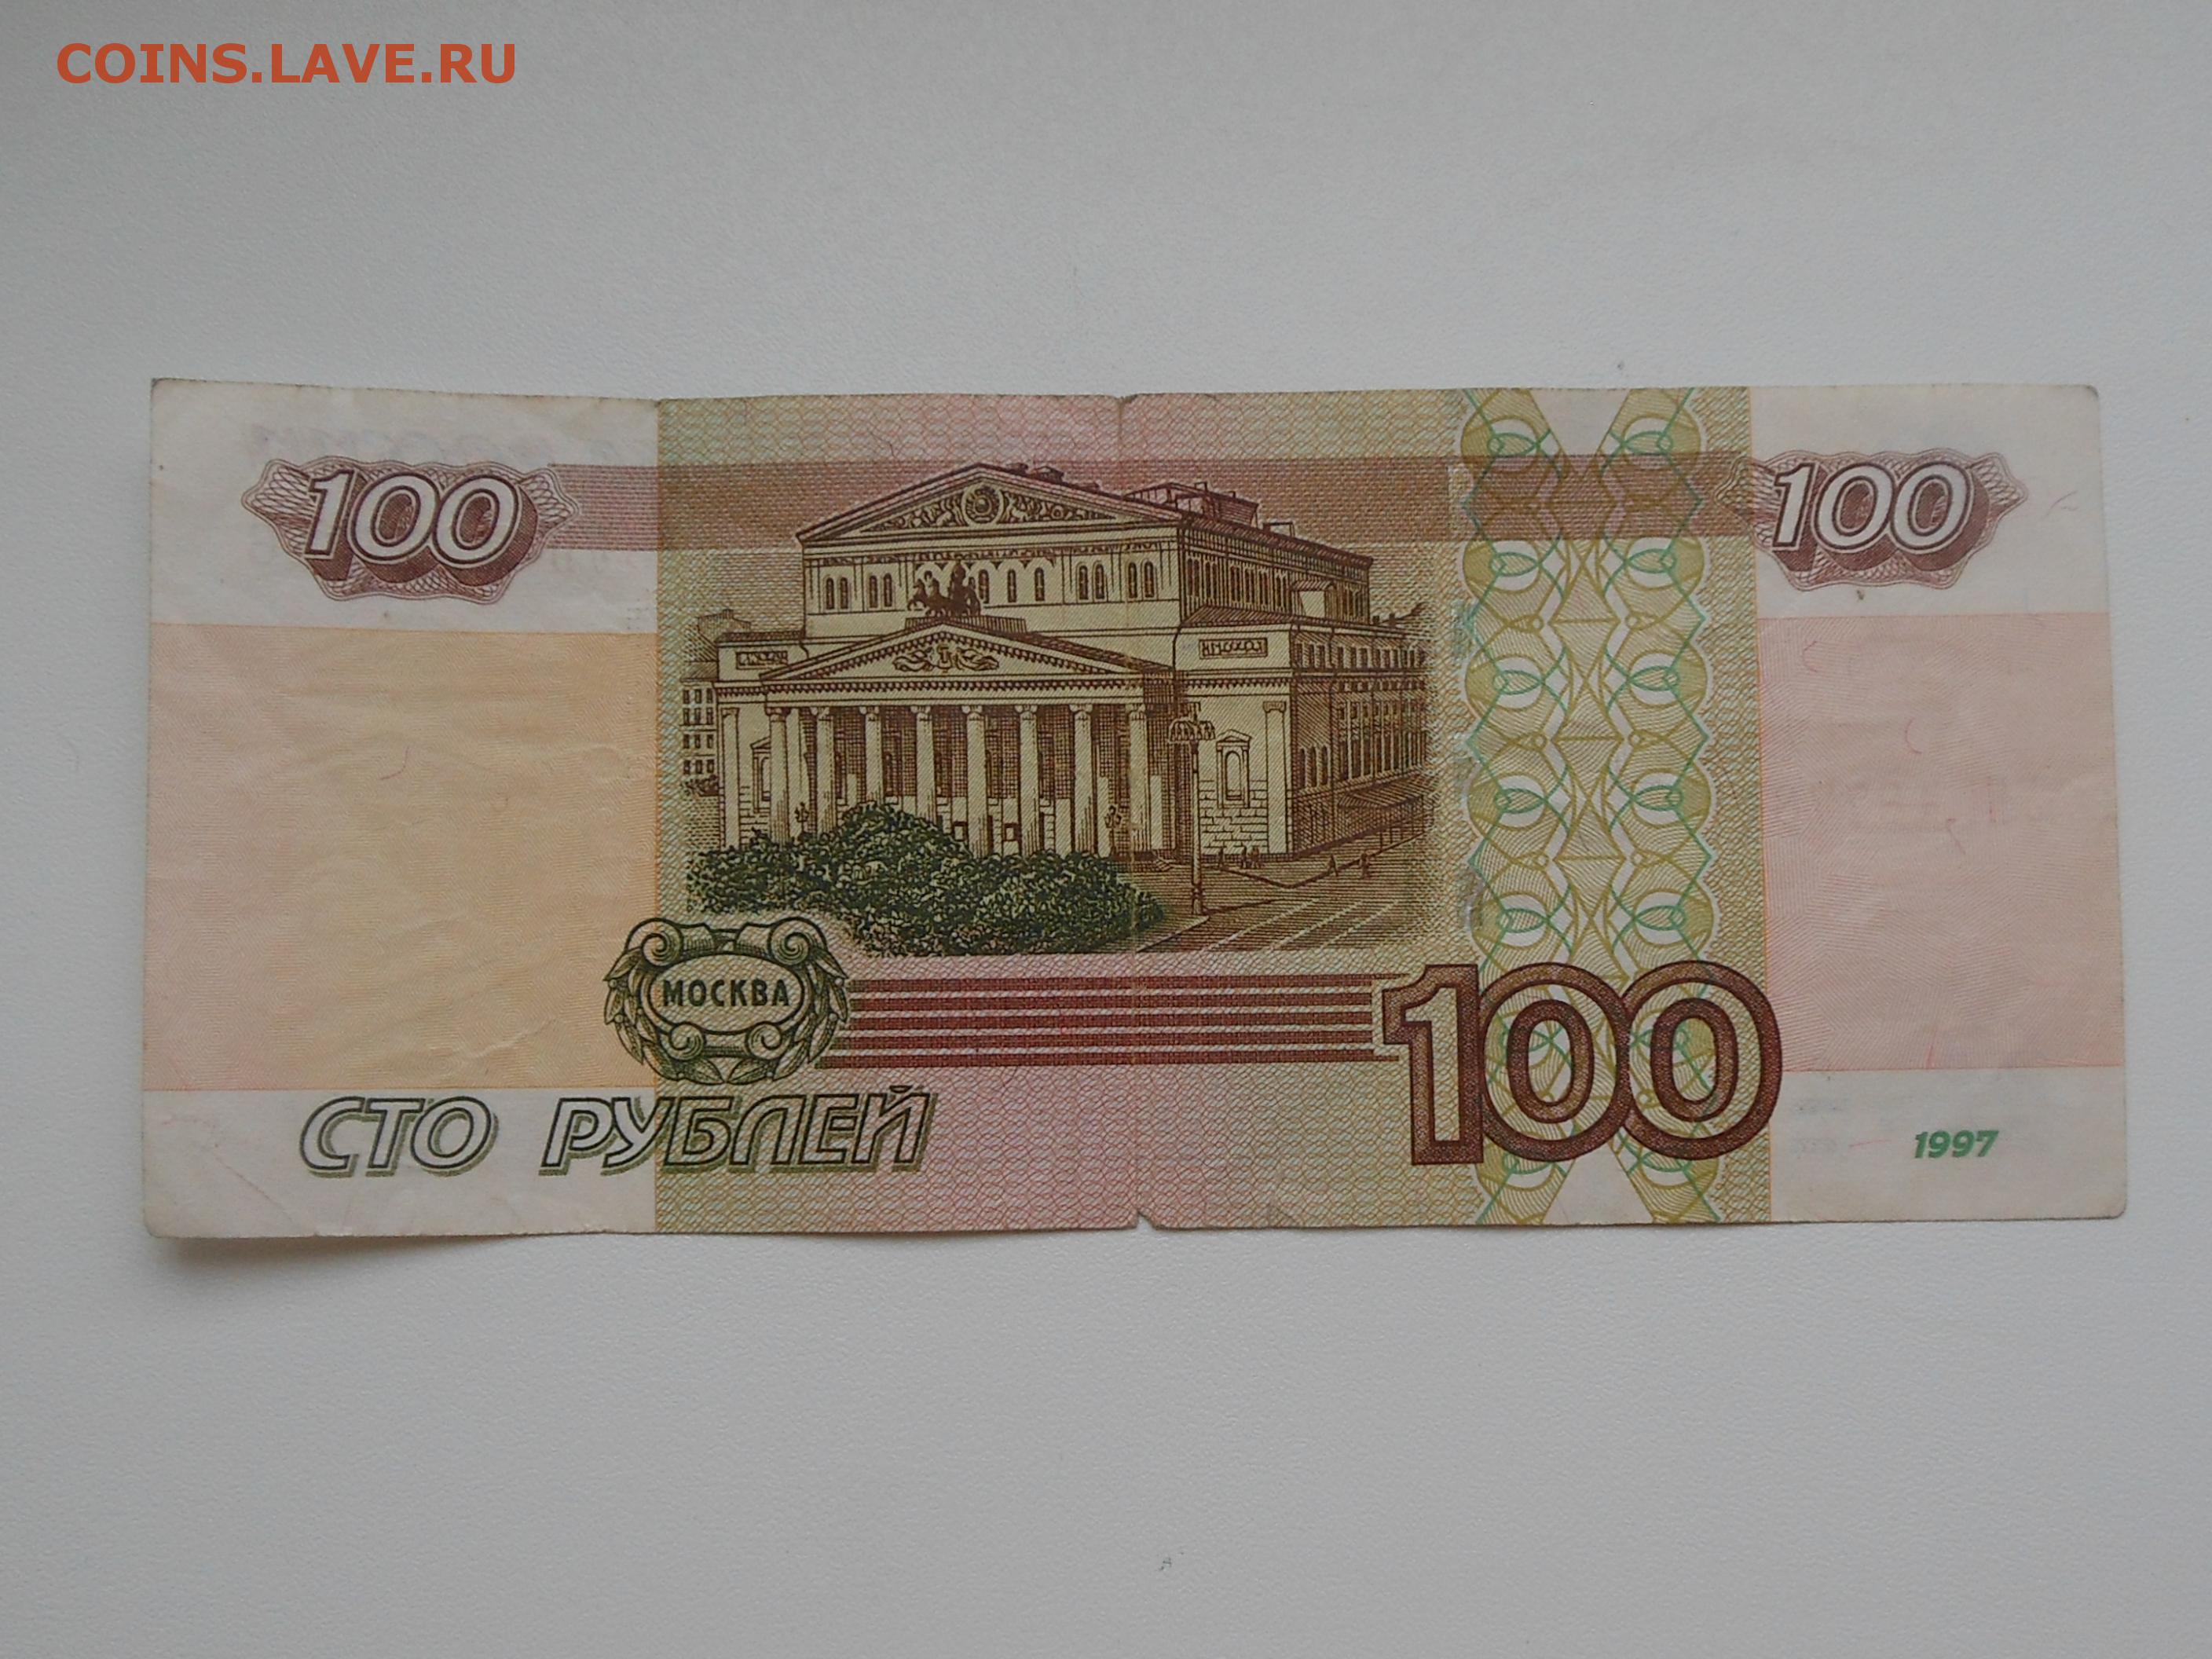 24 50 в рубли. 100 Рублей 1997. Банкнота 100 рублей 1997. 100 Руб 1997 года. 100 Рублей 1997 года без модификации.